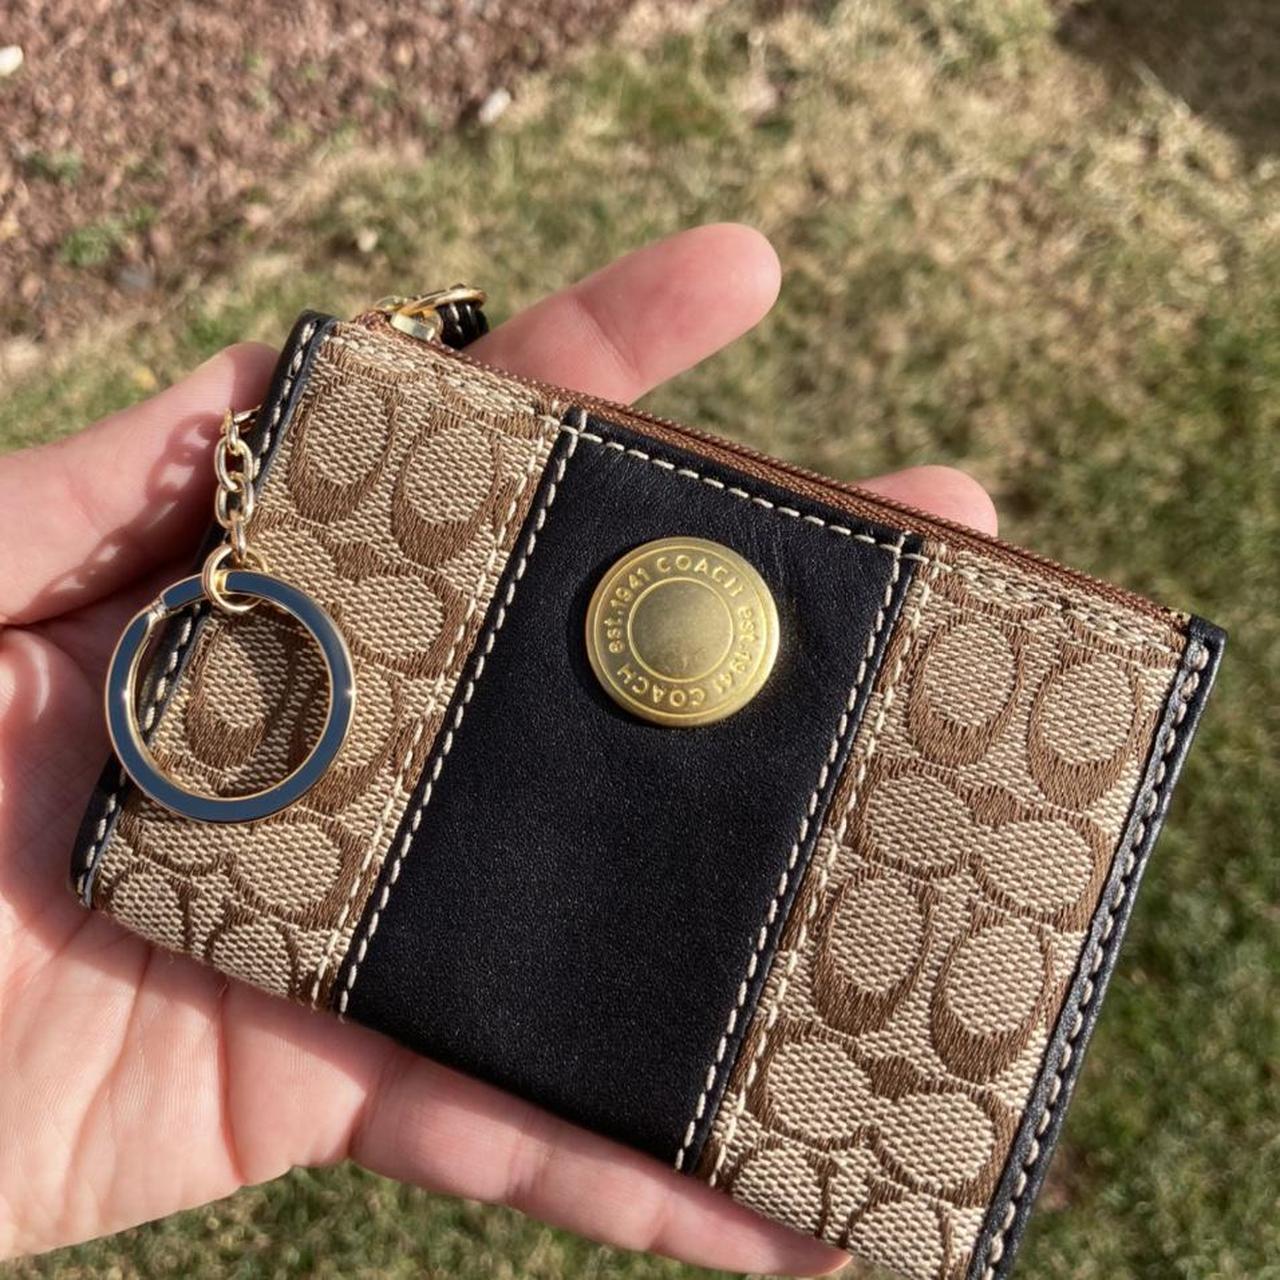 Coach Vintage monogram signature gold chain wristlet mini purse